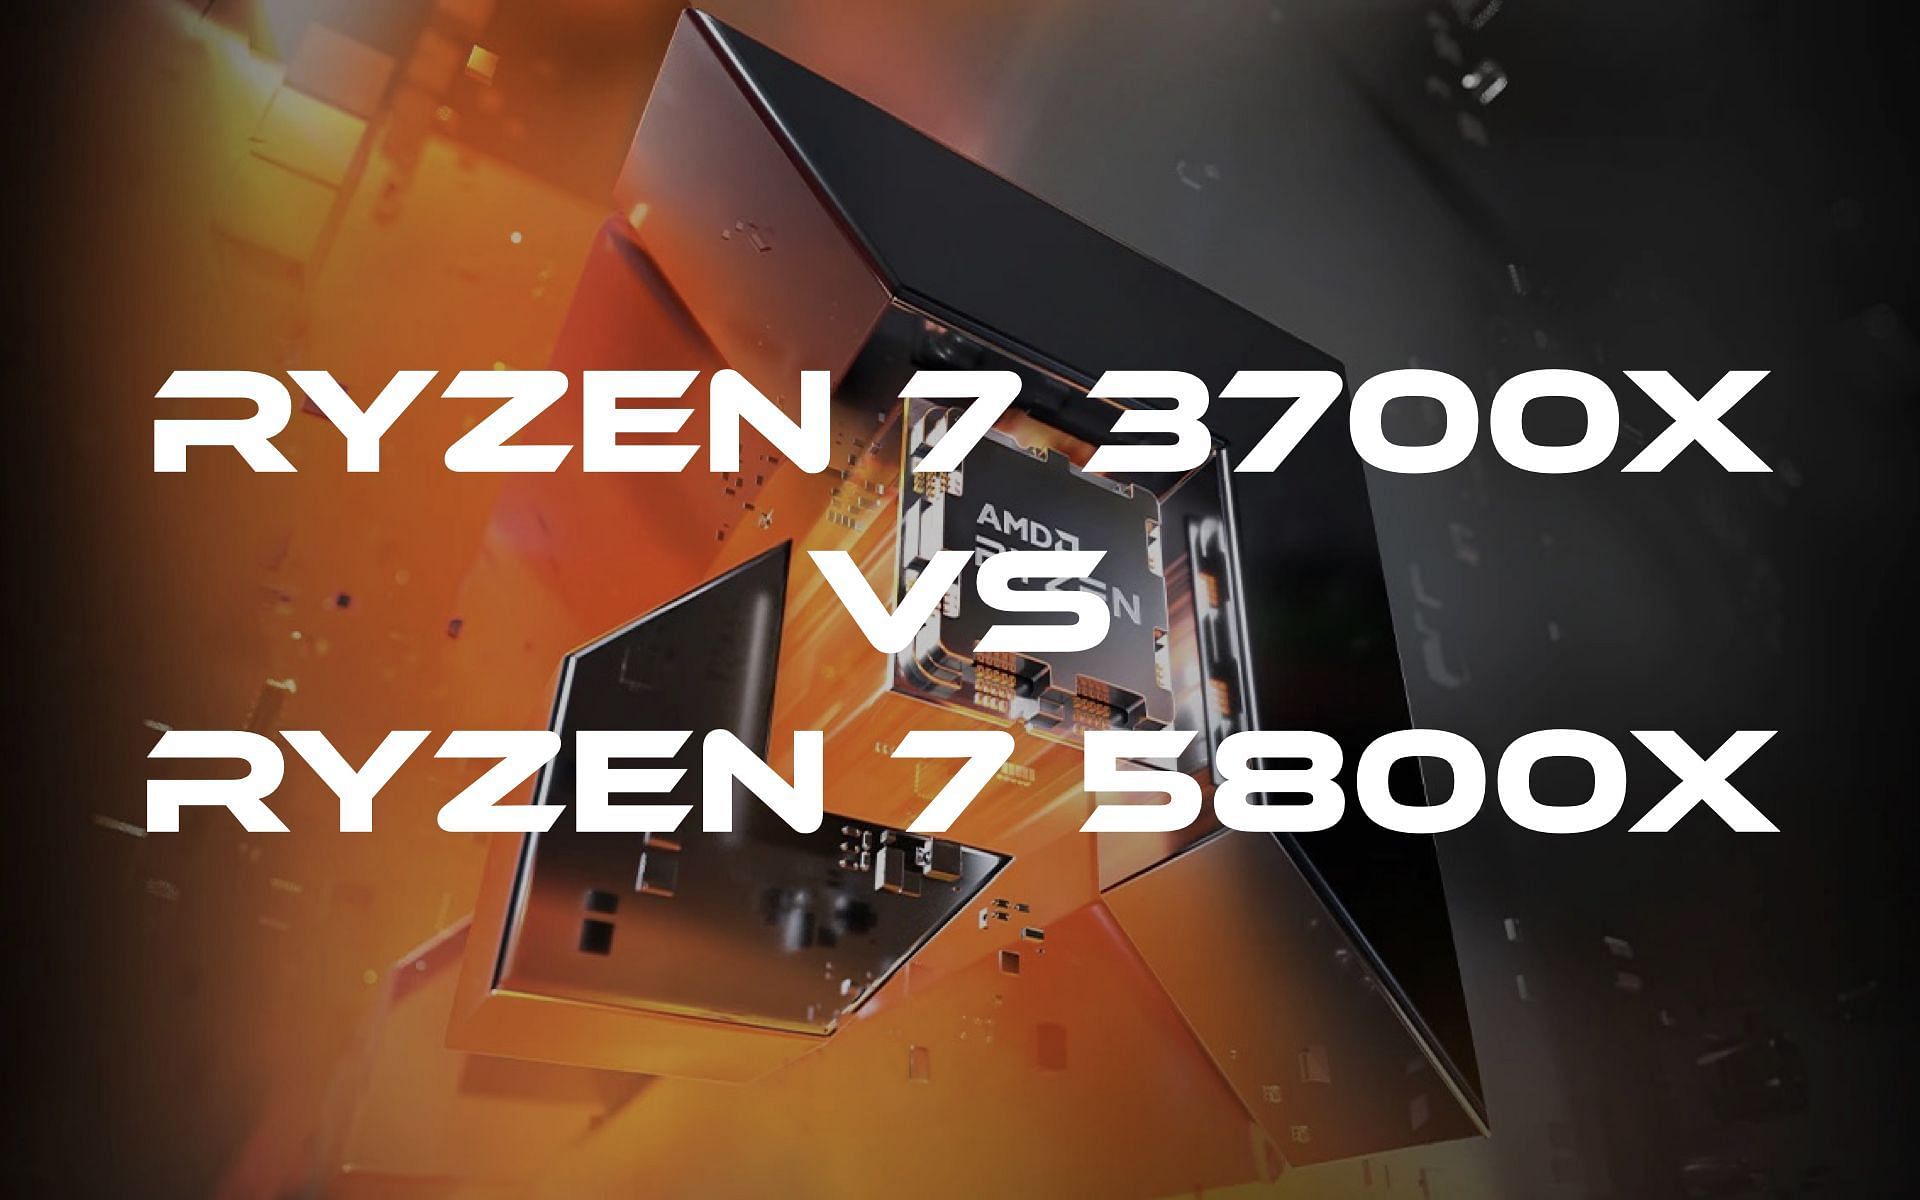 AMD Ryzen 7 3700X vs Ryzen 7 5800X: Which offers better value for